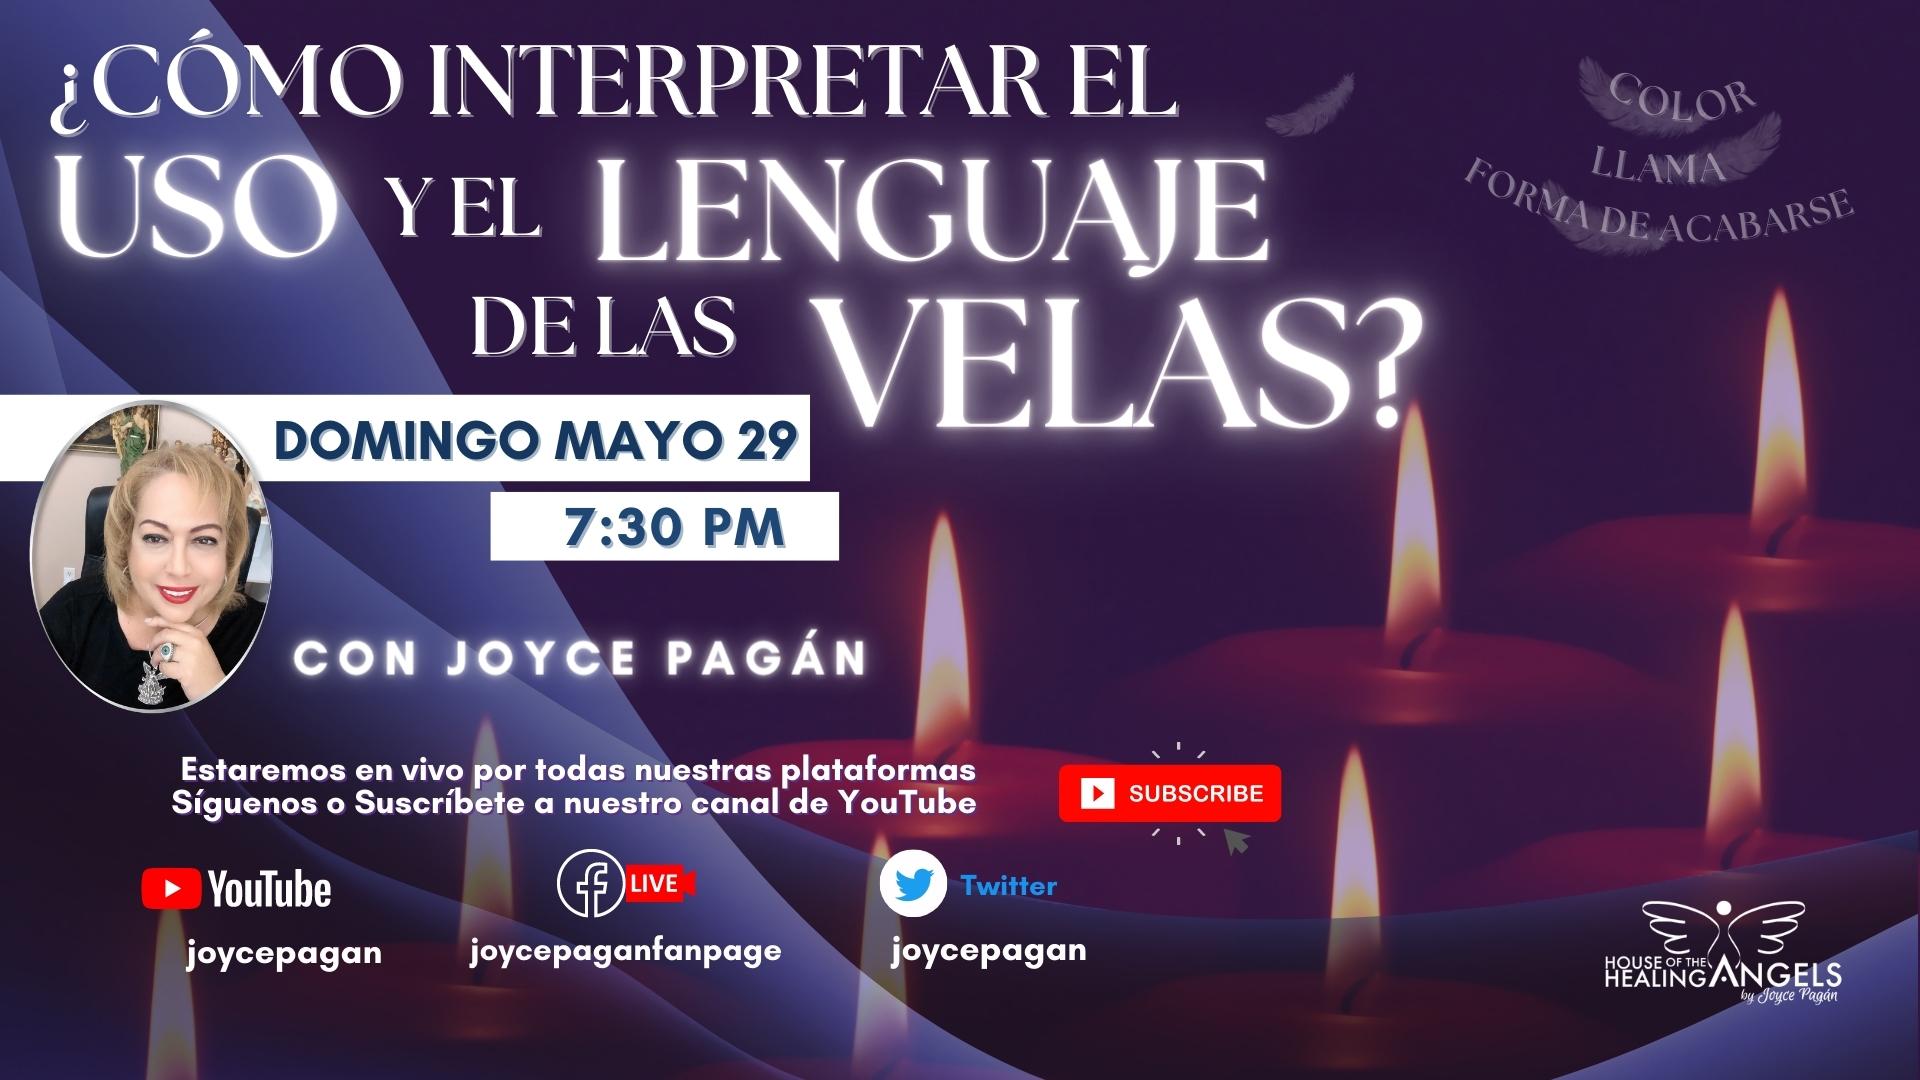 Las velas y su lenguaje / Joyce Pagan